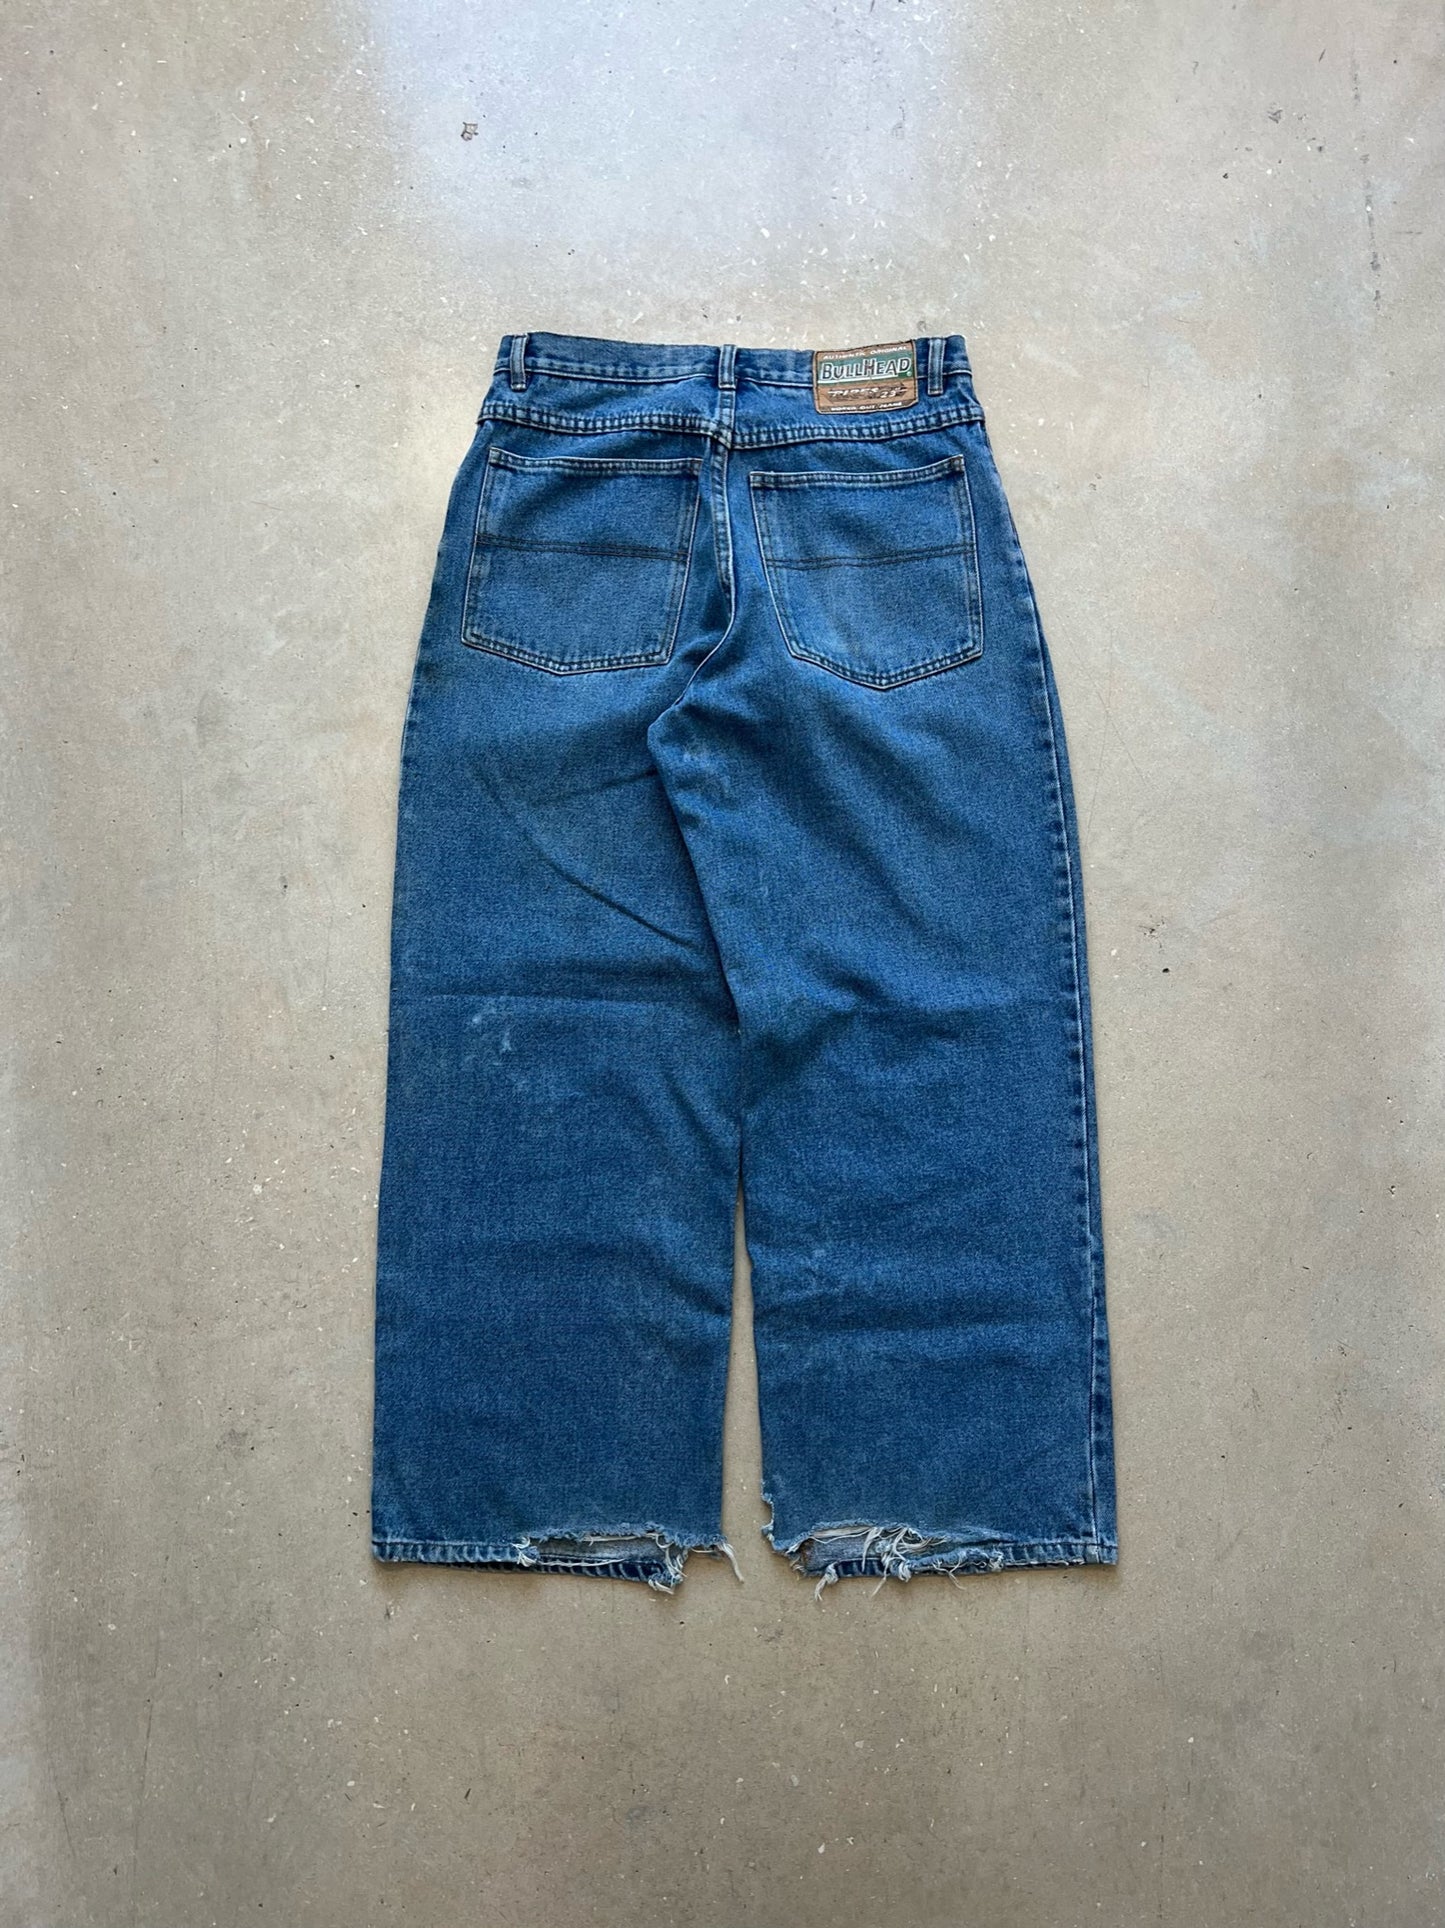 90's Baggy Bullhead Jeans 32 x 30